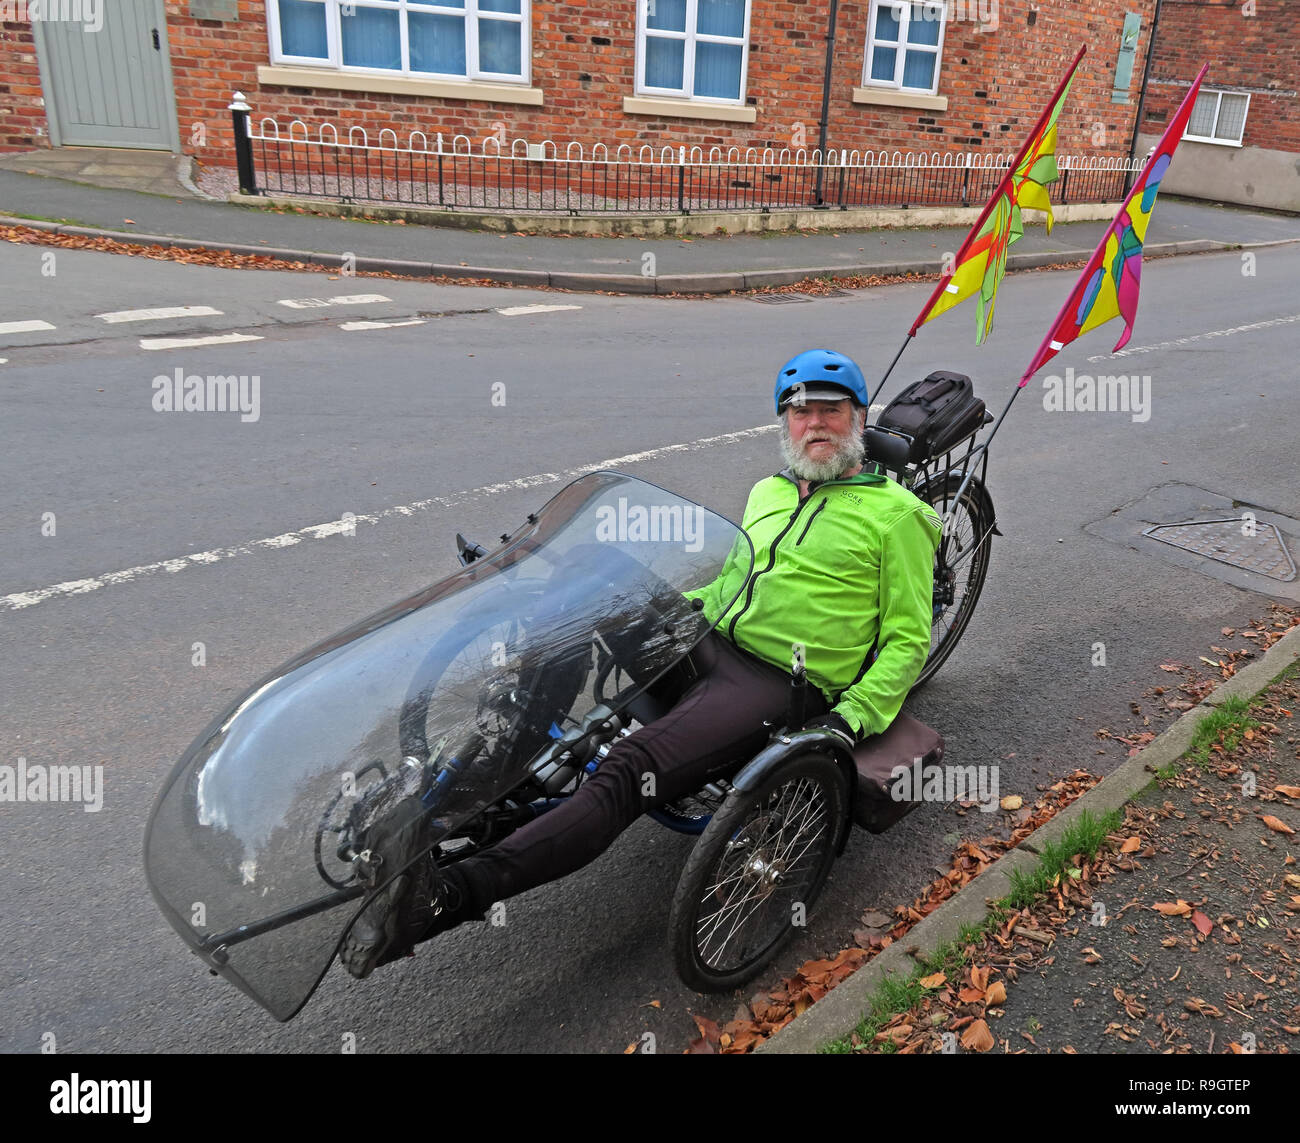 Keith auf einem liegedreirad Bike, Antrobus, Northwich, Cheshire, North West England, UK, CW9 6JW Stockfoto